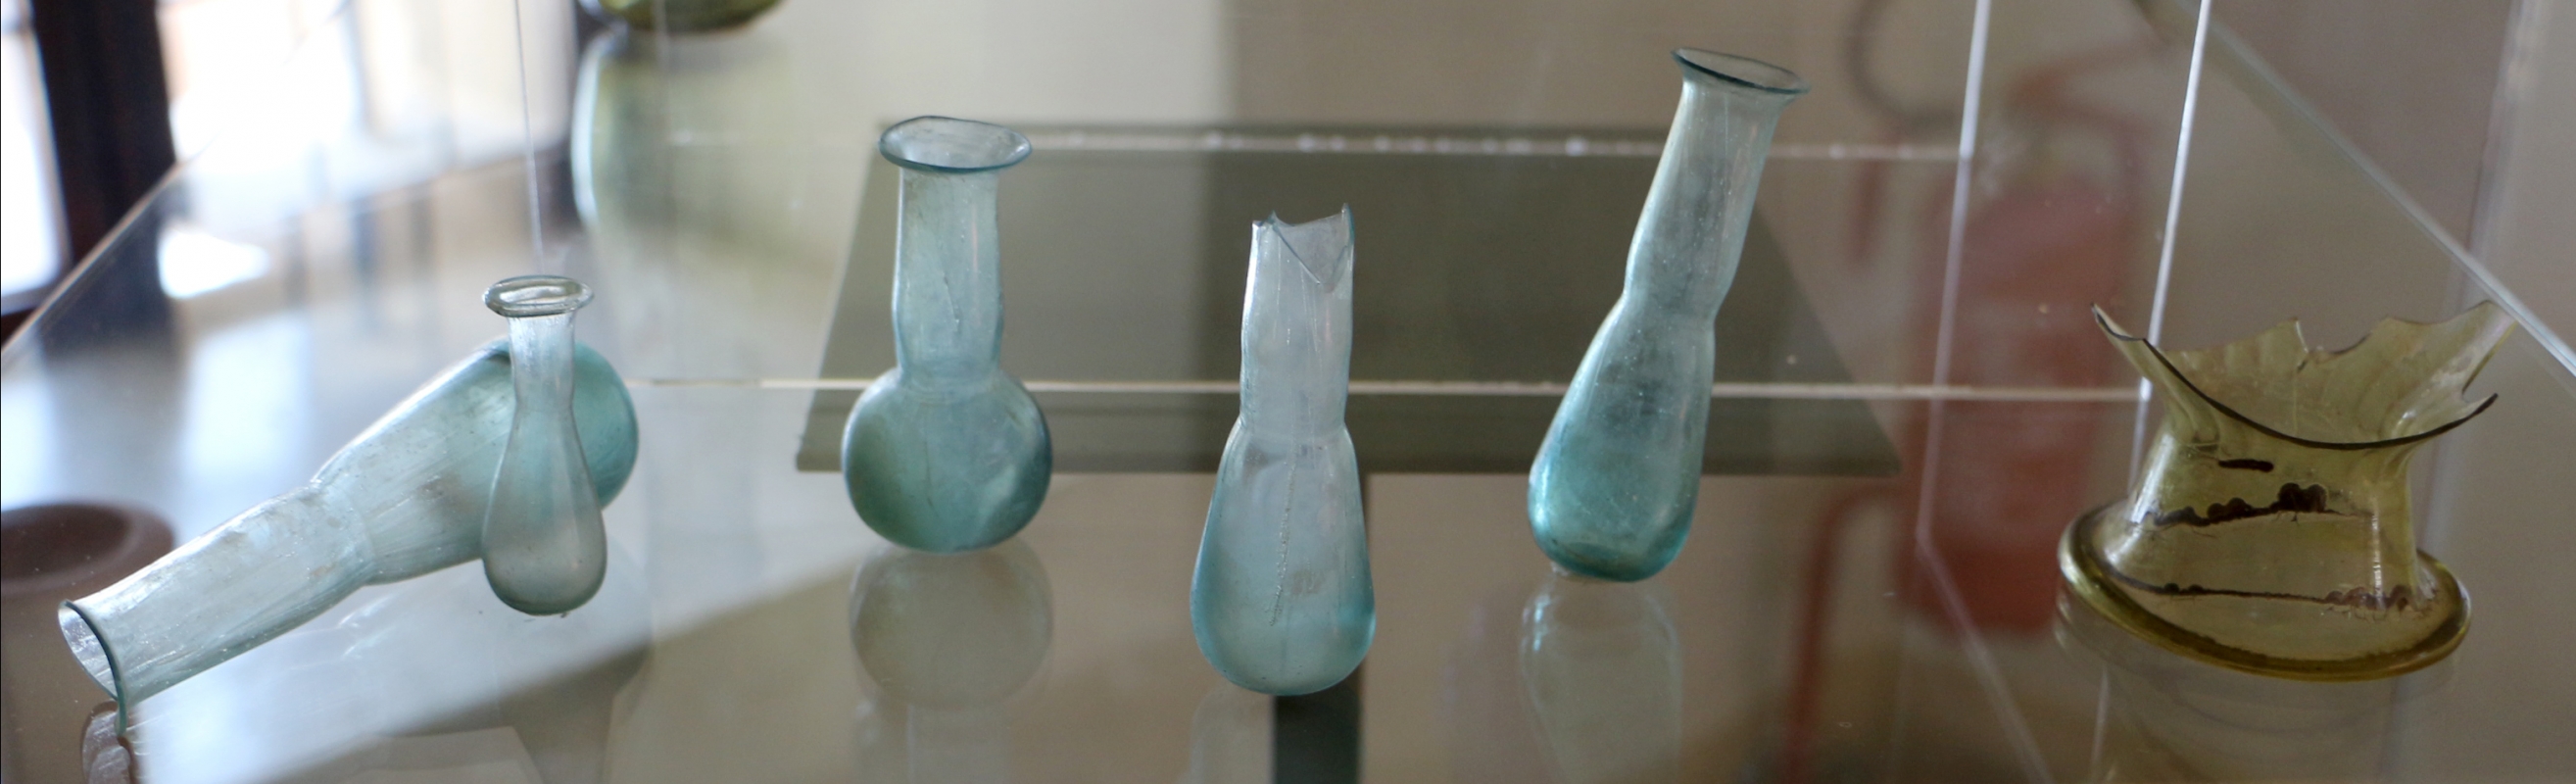 Balsamari in vetro, dalla necropoli le palazzette di classe, I-IV secolo ca. 01 - Sailko